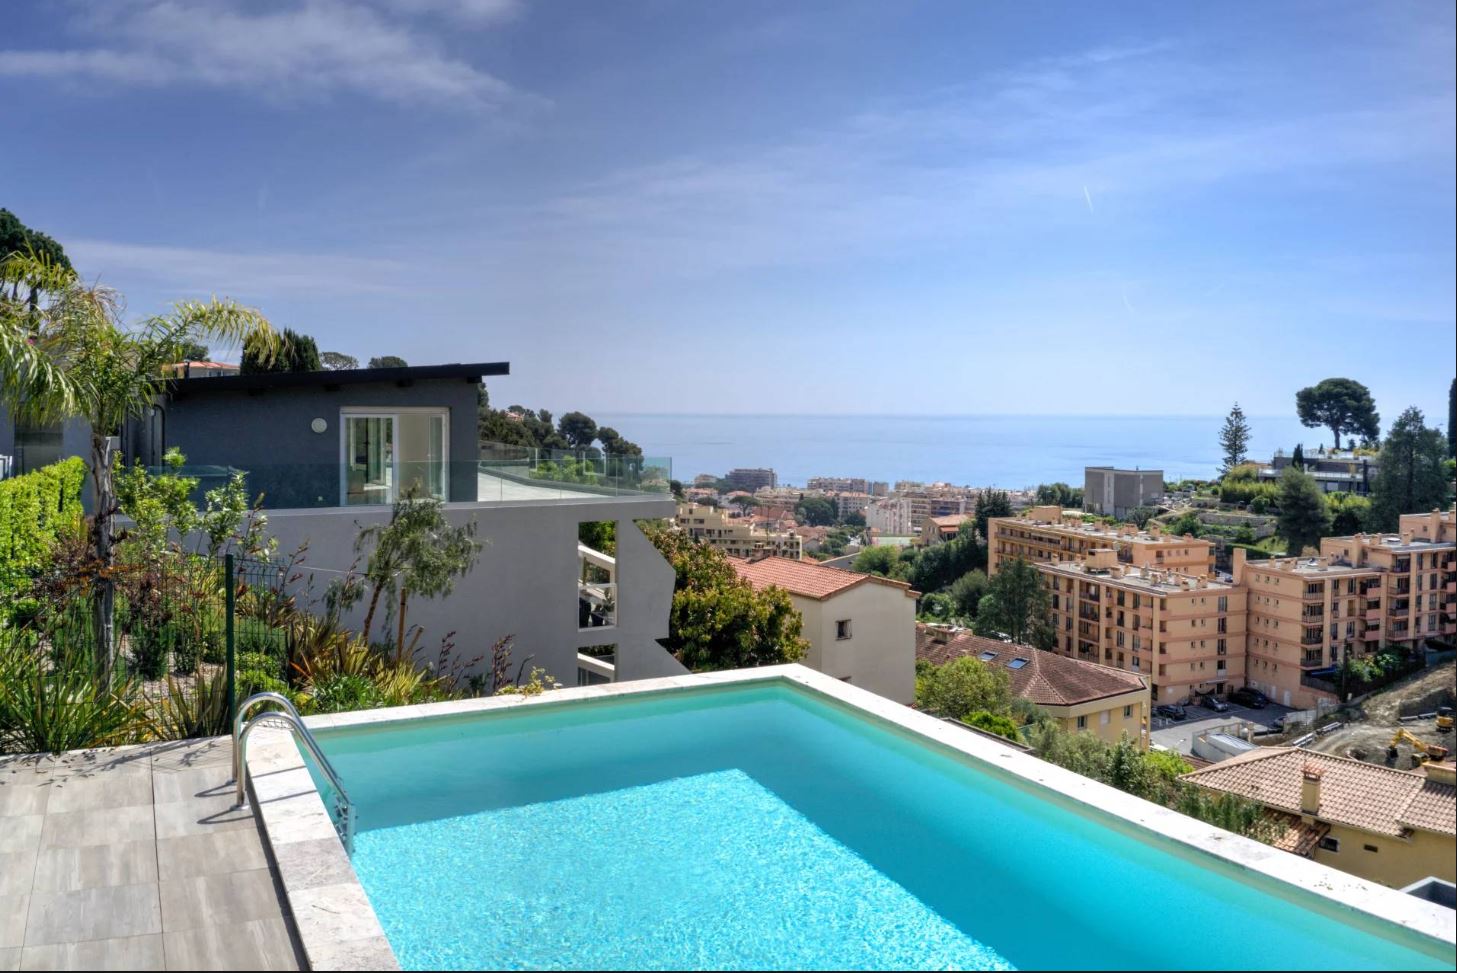 Пентхаус рядом с Монако , новый  дом с бассейном и ремонт от дизайнера